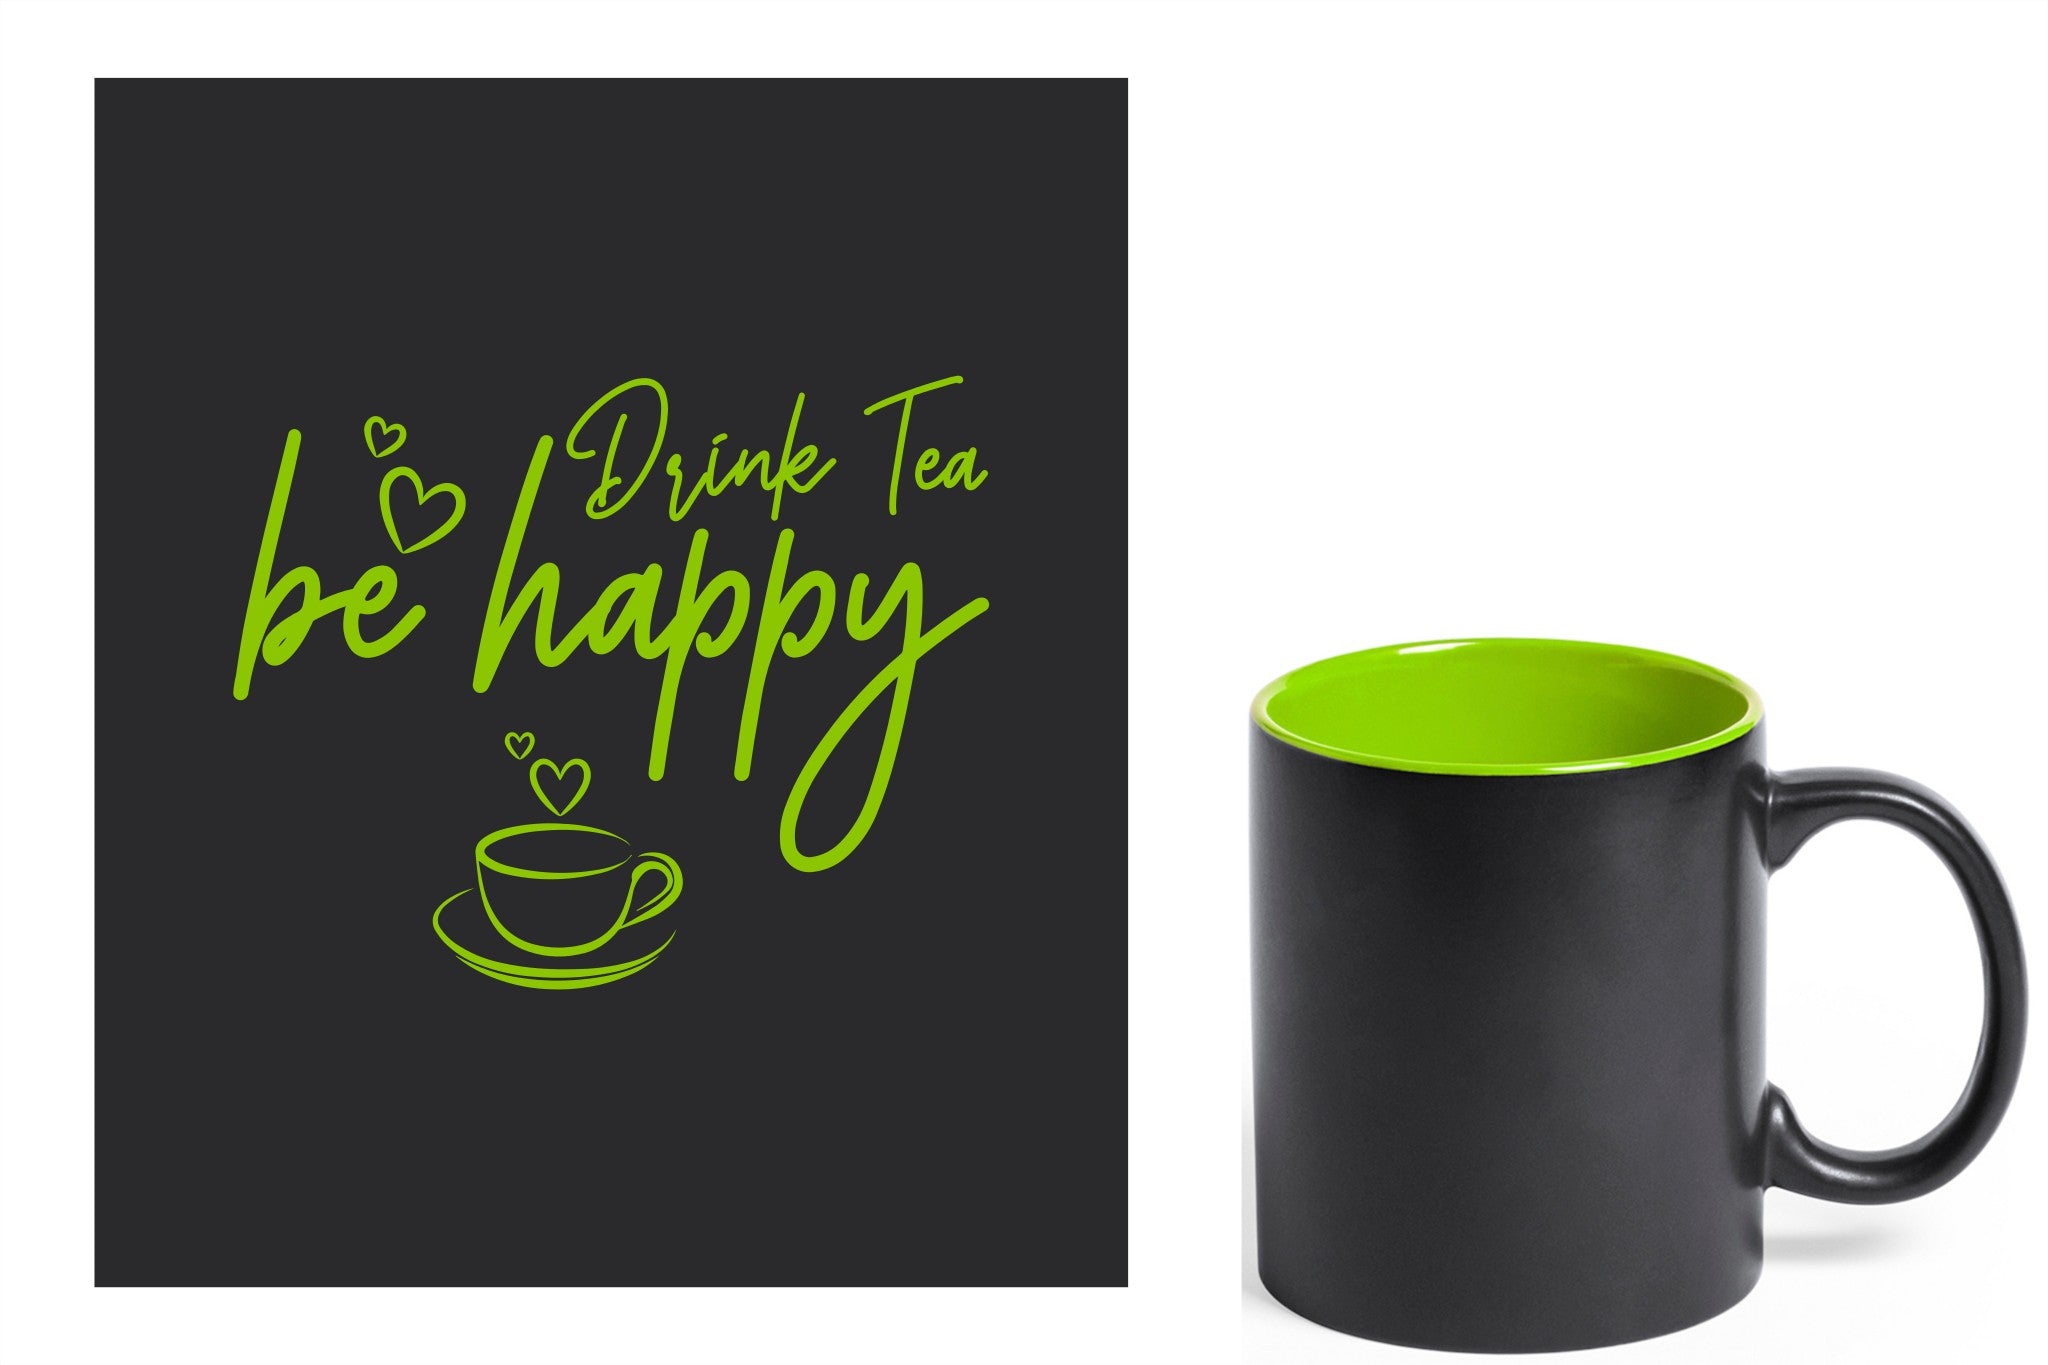 zwarte keramische mok met groene gravure  'Be happy drink tea'.